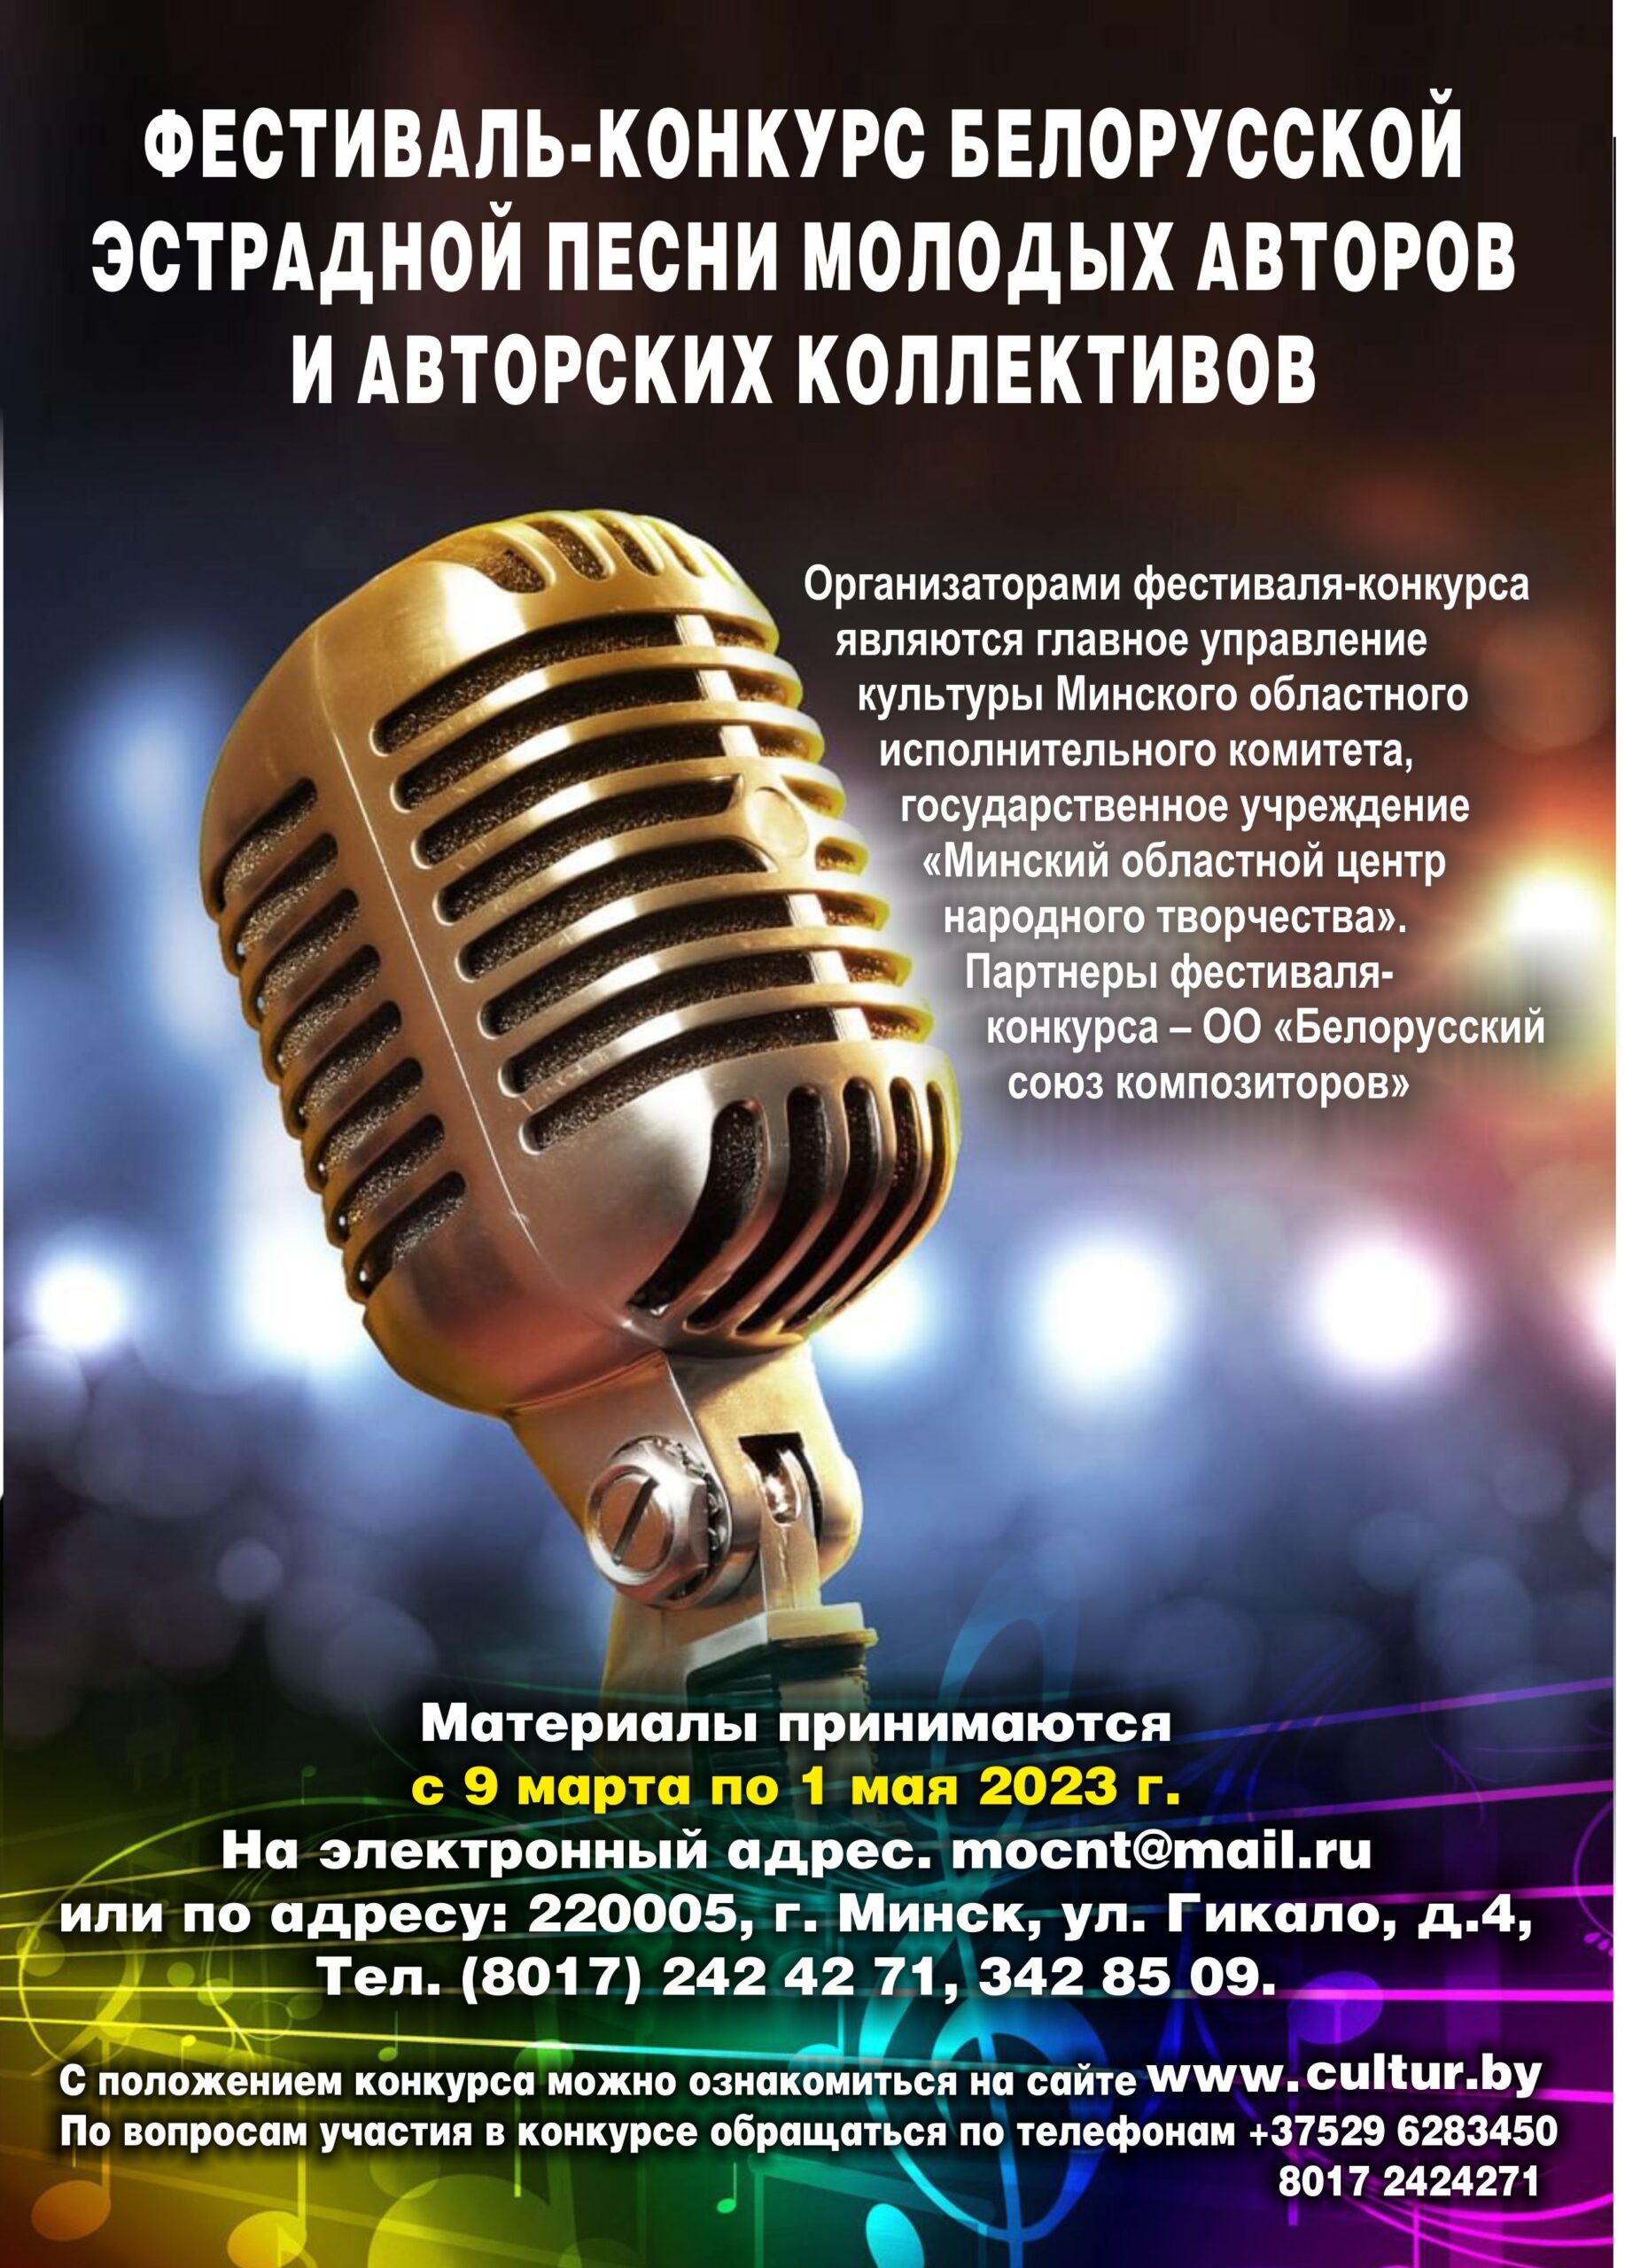 Фестиваль-конкурс белорусской  эстрадной песни молодых авторов  и авторских коллективов